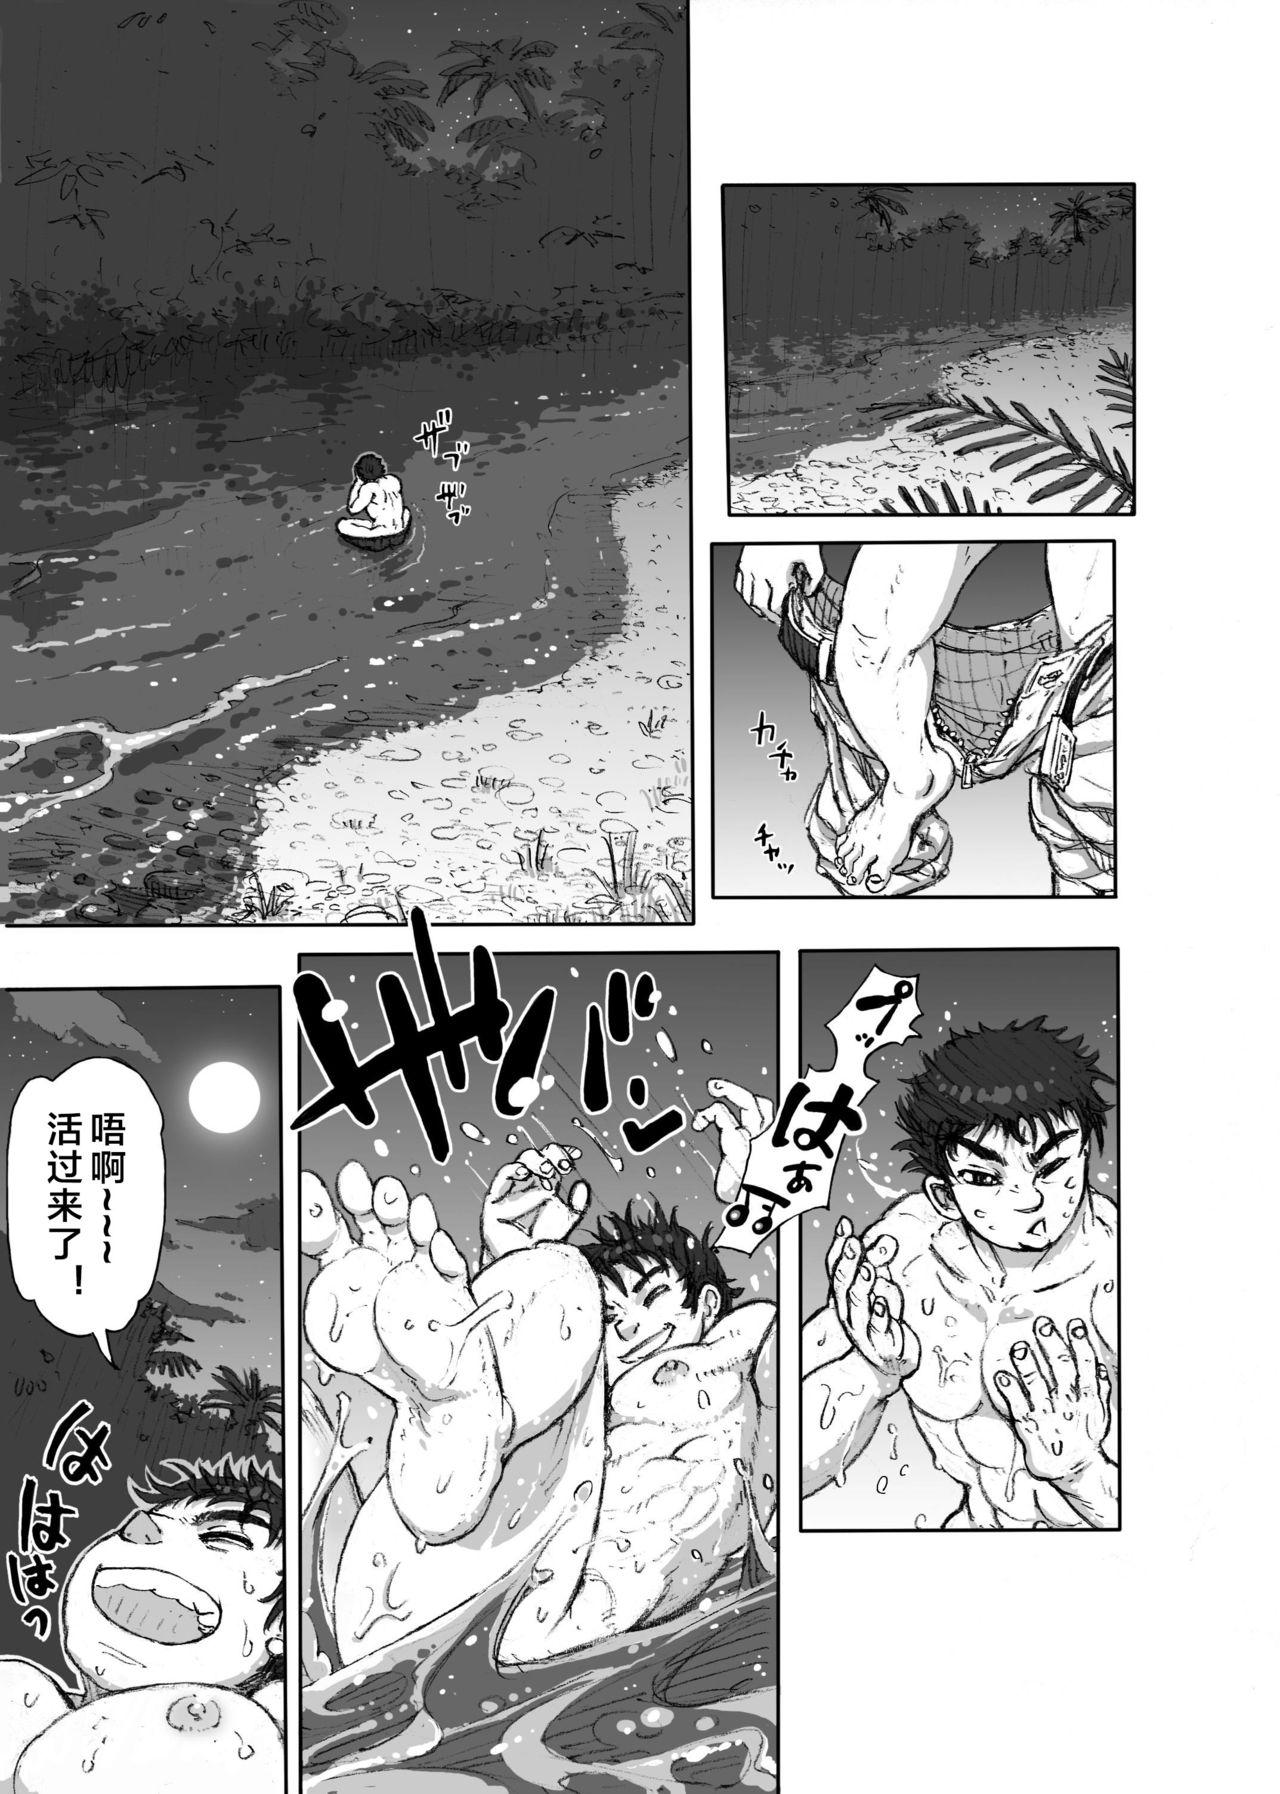 Romance Hepoe no Kuni kara 1 - Mizu no Gakusha Sensei, Hi no Buzoku no Saru ni Hazukashimerareru no Maki Banging - Page 5